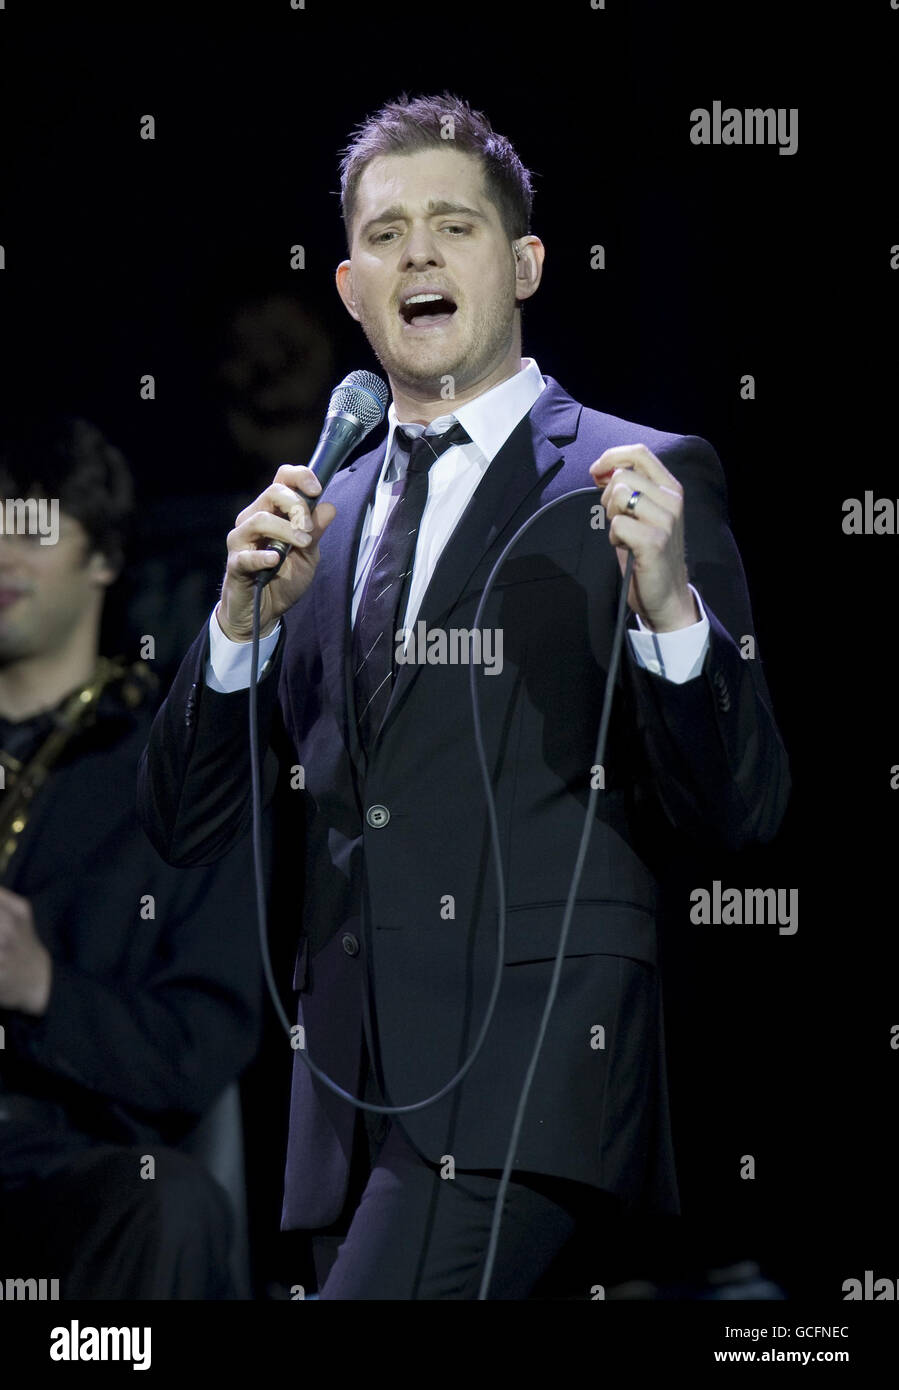 Michael Bublé en concert - Londres.Michael Bublé se produit sur scène à la 02 Arena de Londres. Banque D'Images